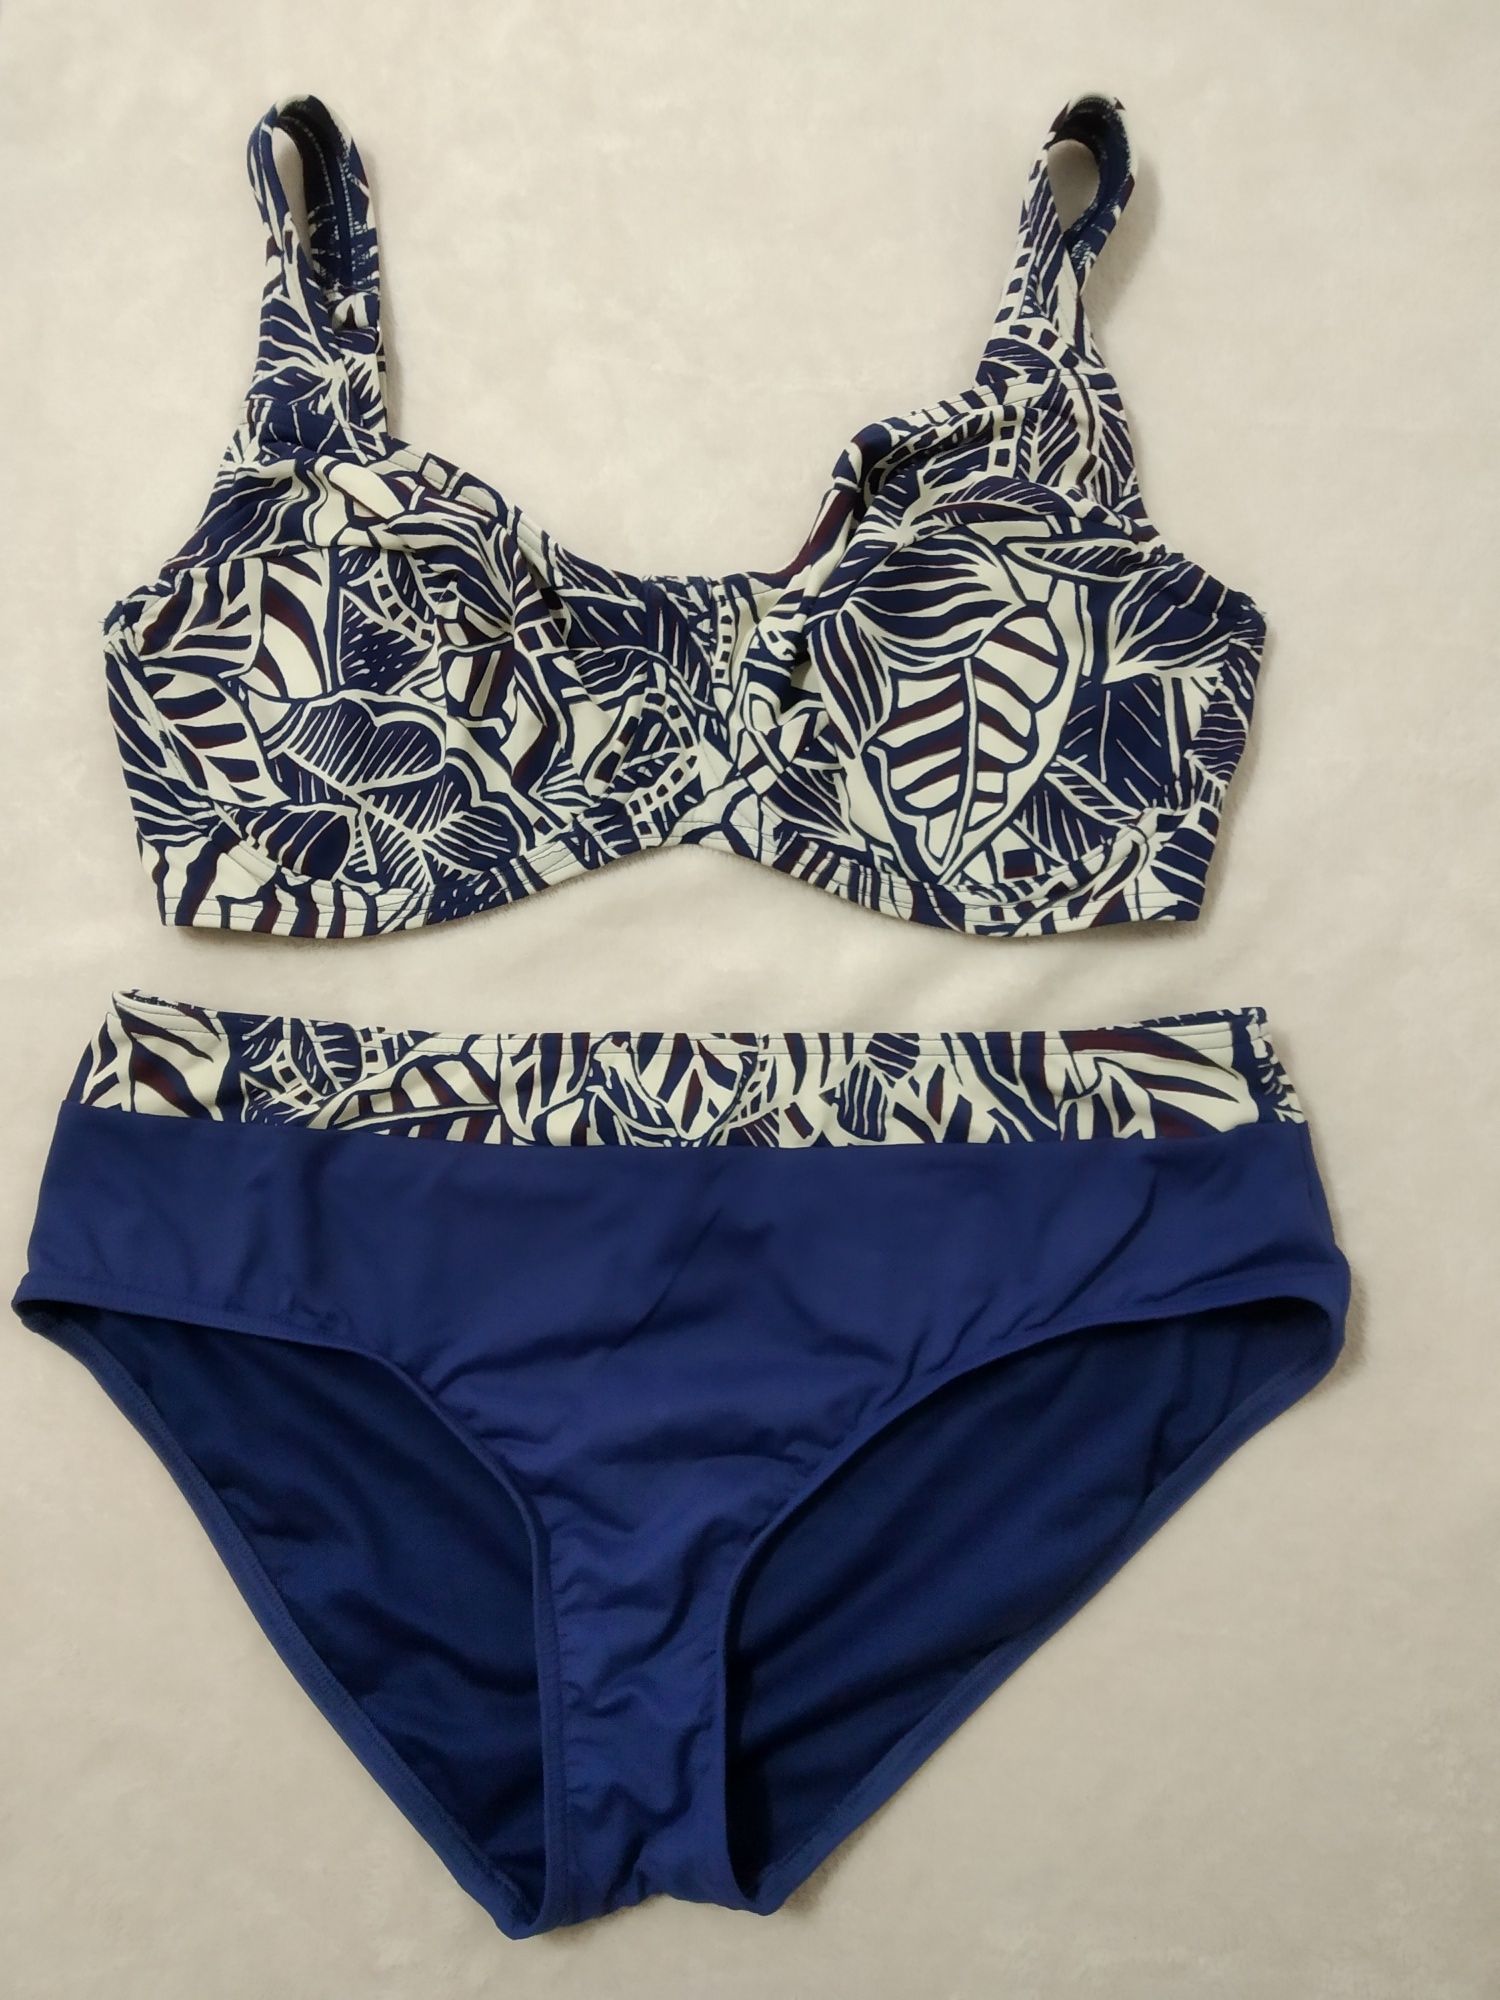 (NOVO, PORTES GRÁTIS) Bikini TRIUMPH azul estampado - Tamanho 42 E